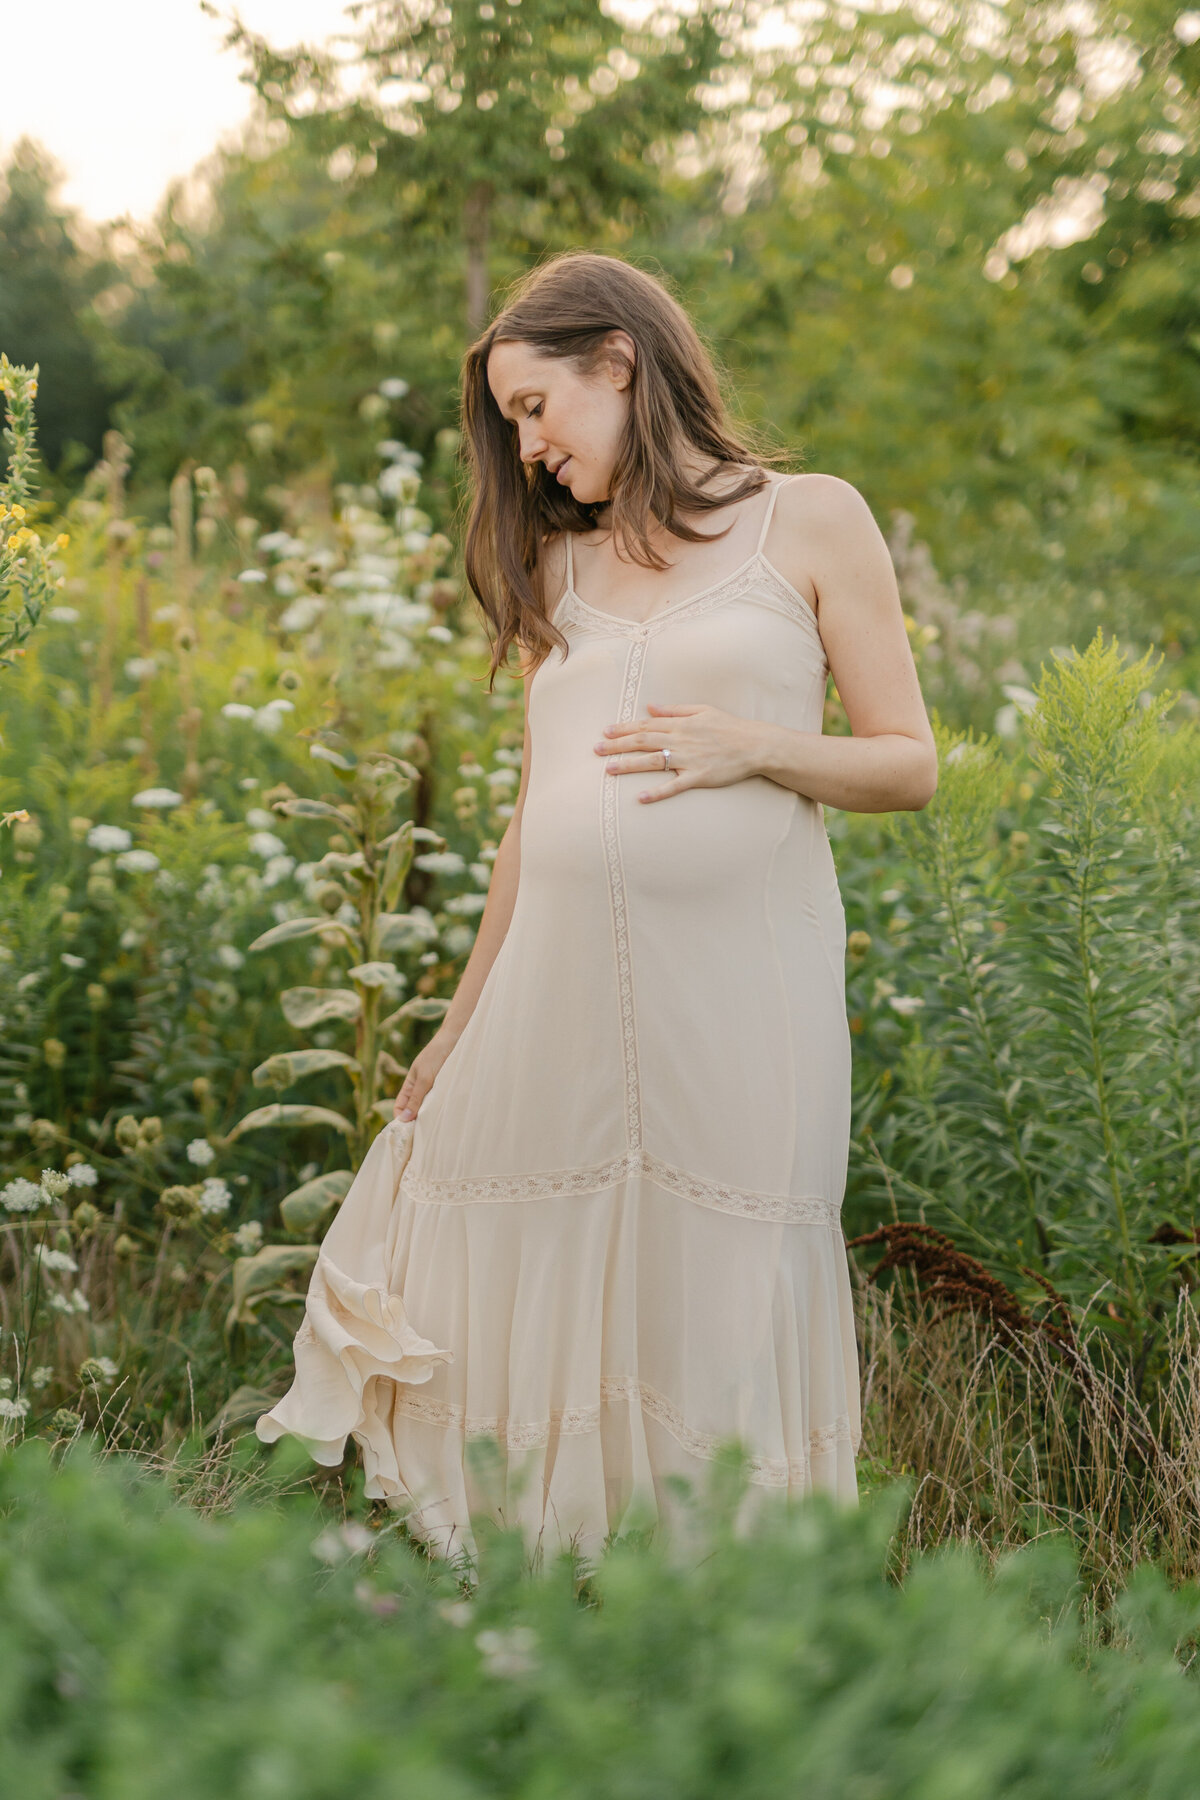 pregnant woman in beige dress in a field